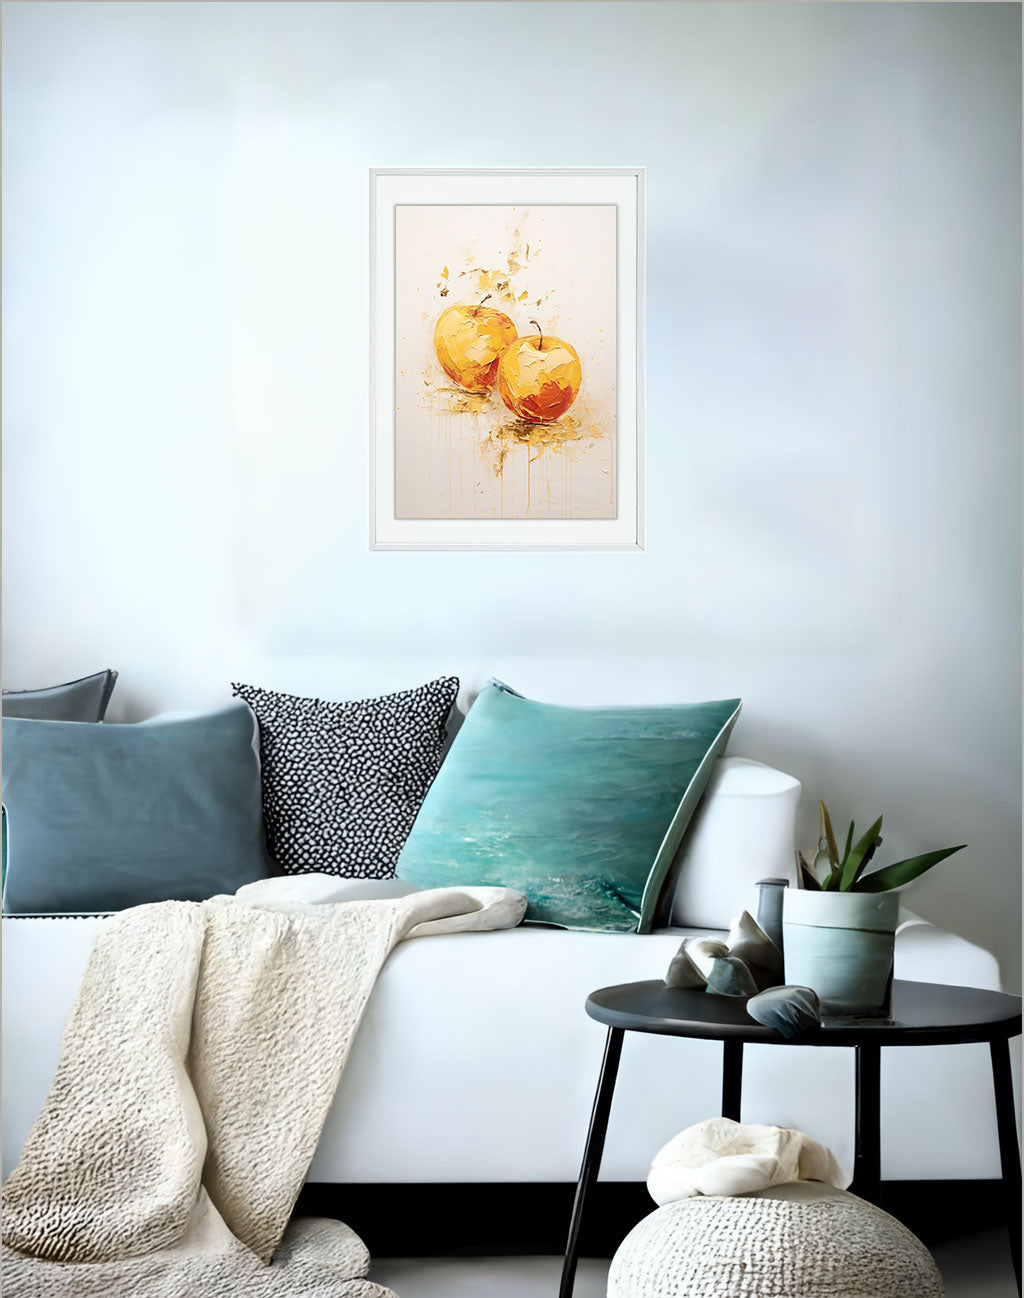 りんごのアートポスター:apple_d8b5 / キッチン_フルーツと野菜_のポスター画像ソファ近くに設置したイメージ